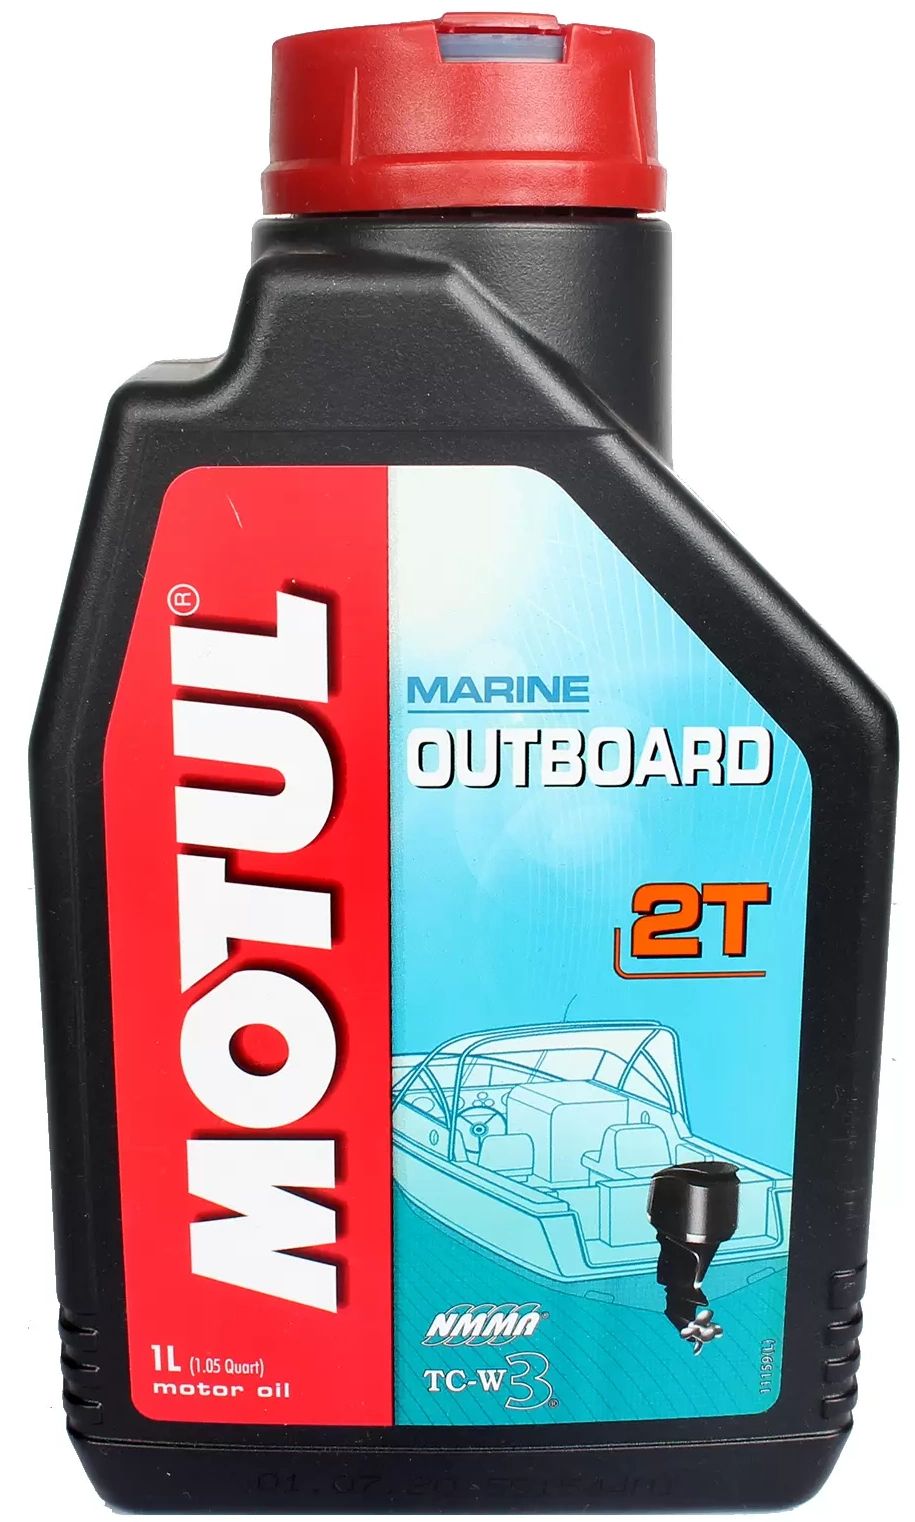 Motul outboard 2t 1л. Motul outboard tech 2t